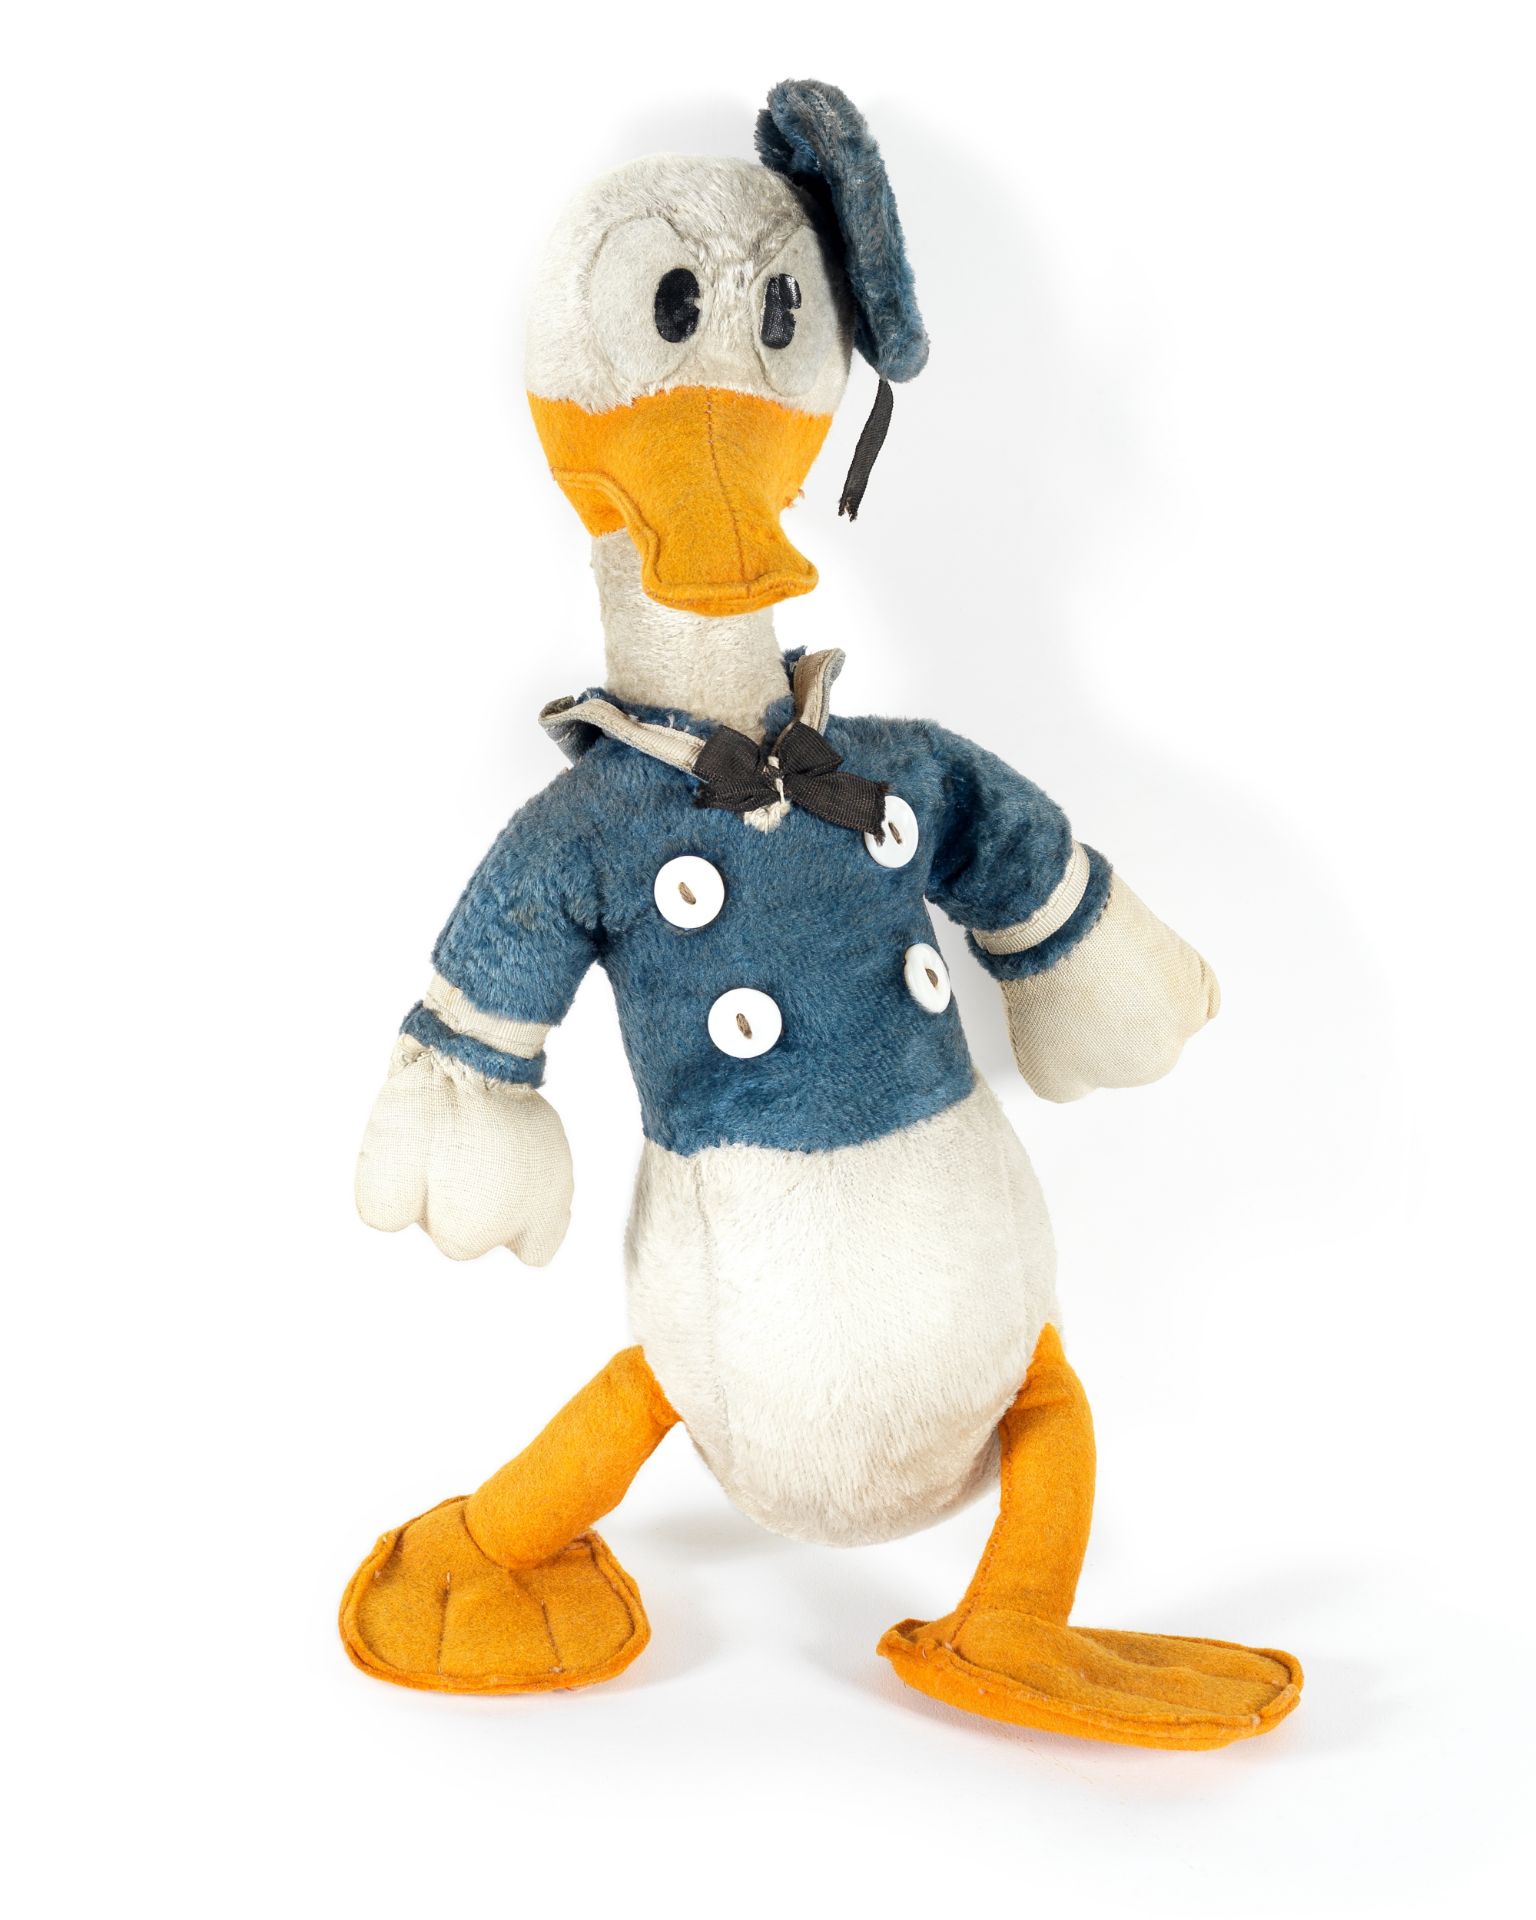 Donald Duck: A rare original plush and felt toy, Walt Disney, 1930s-40s,